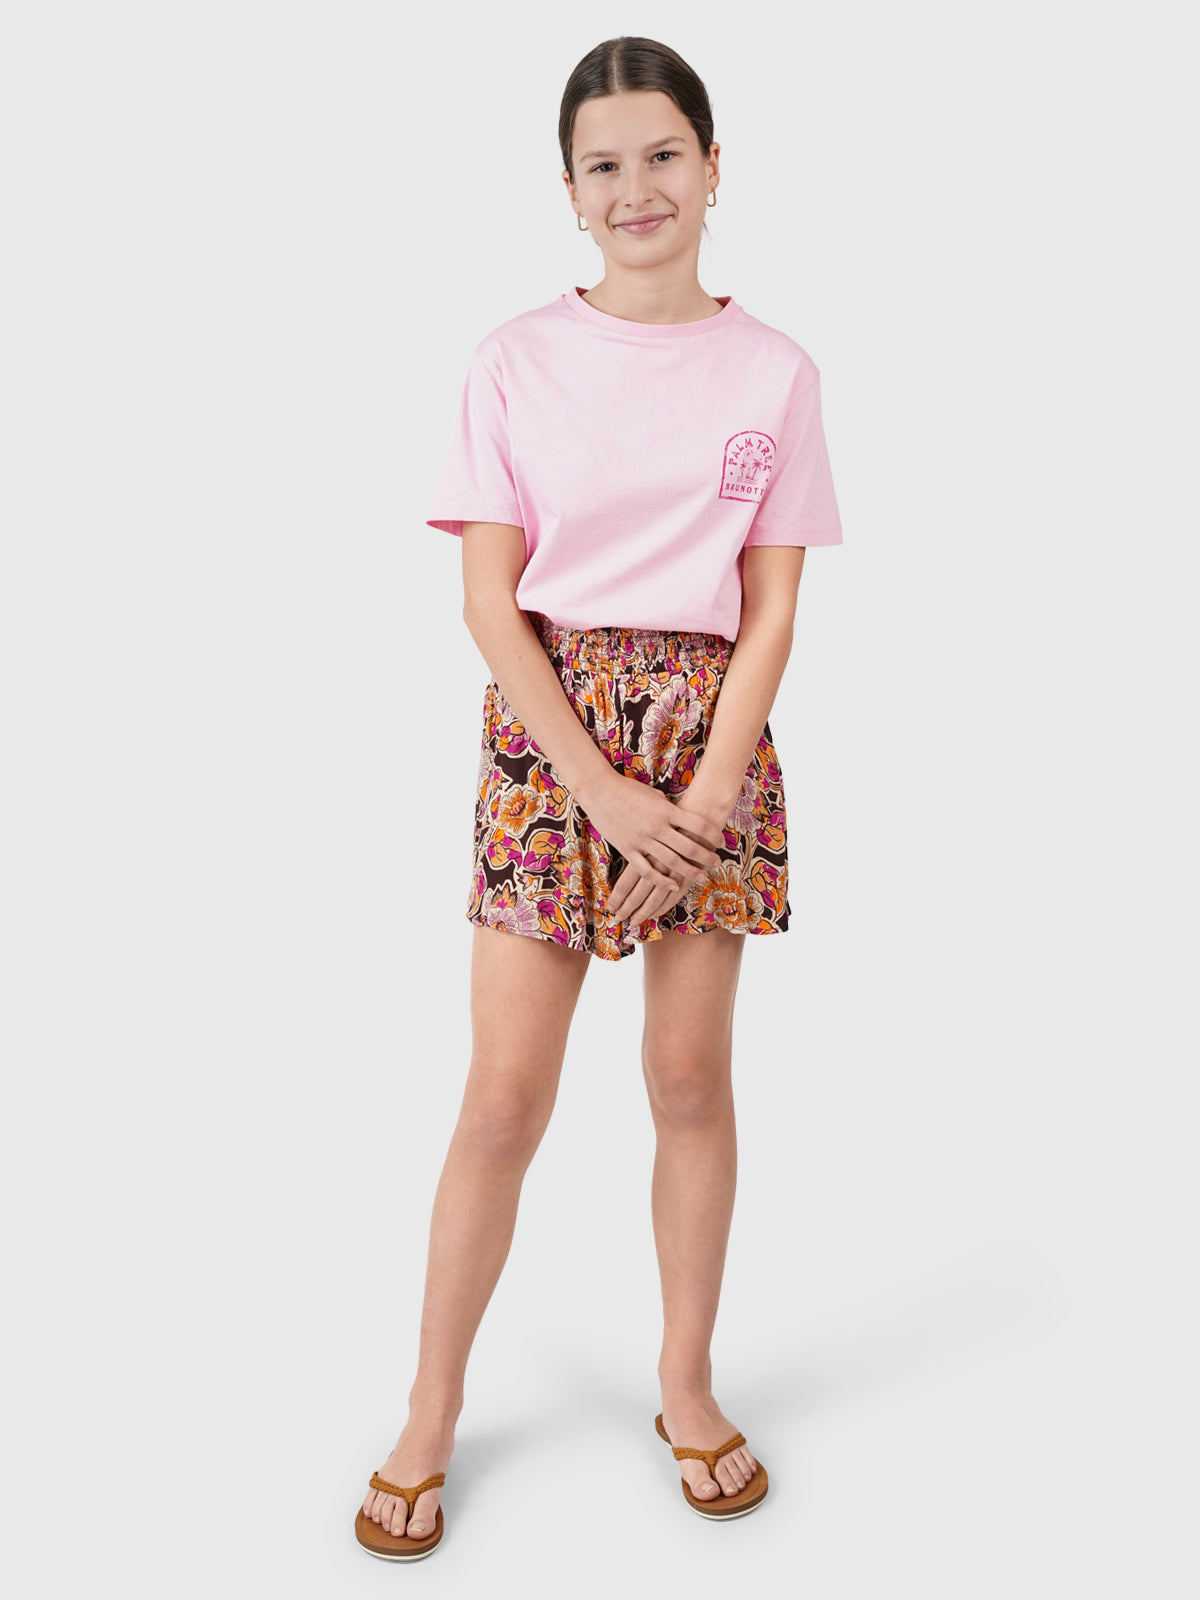 Vievy Mädchen T-Shirt | Pink